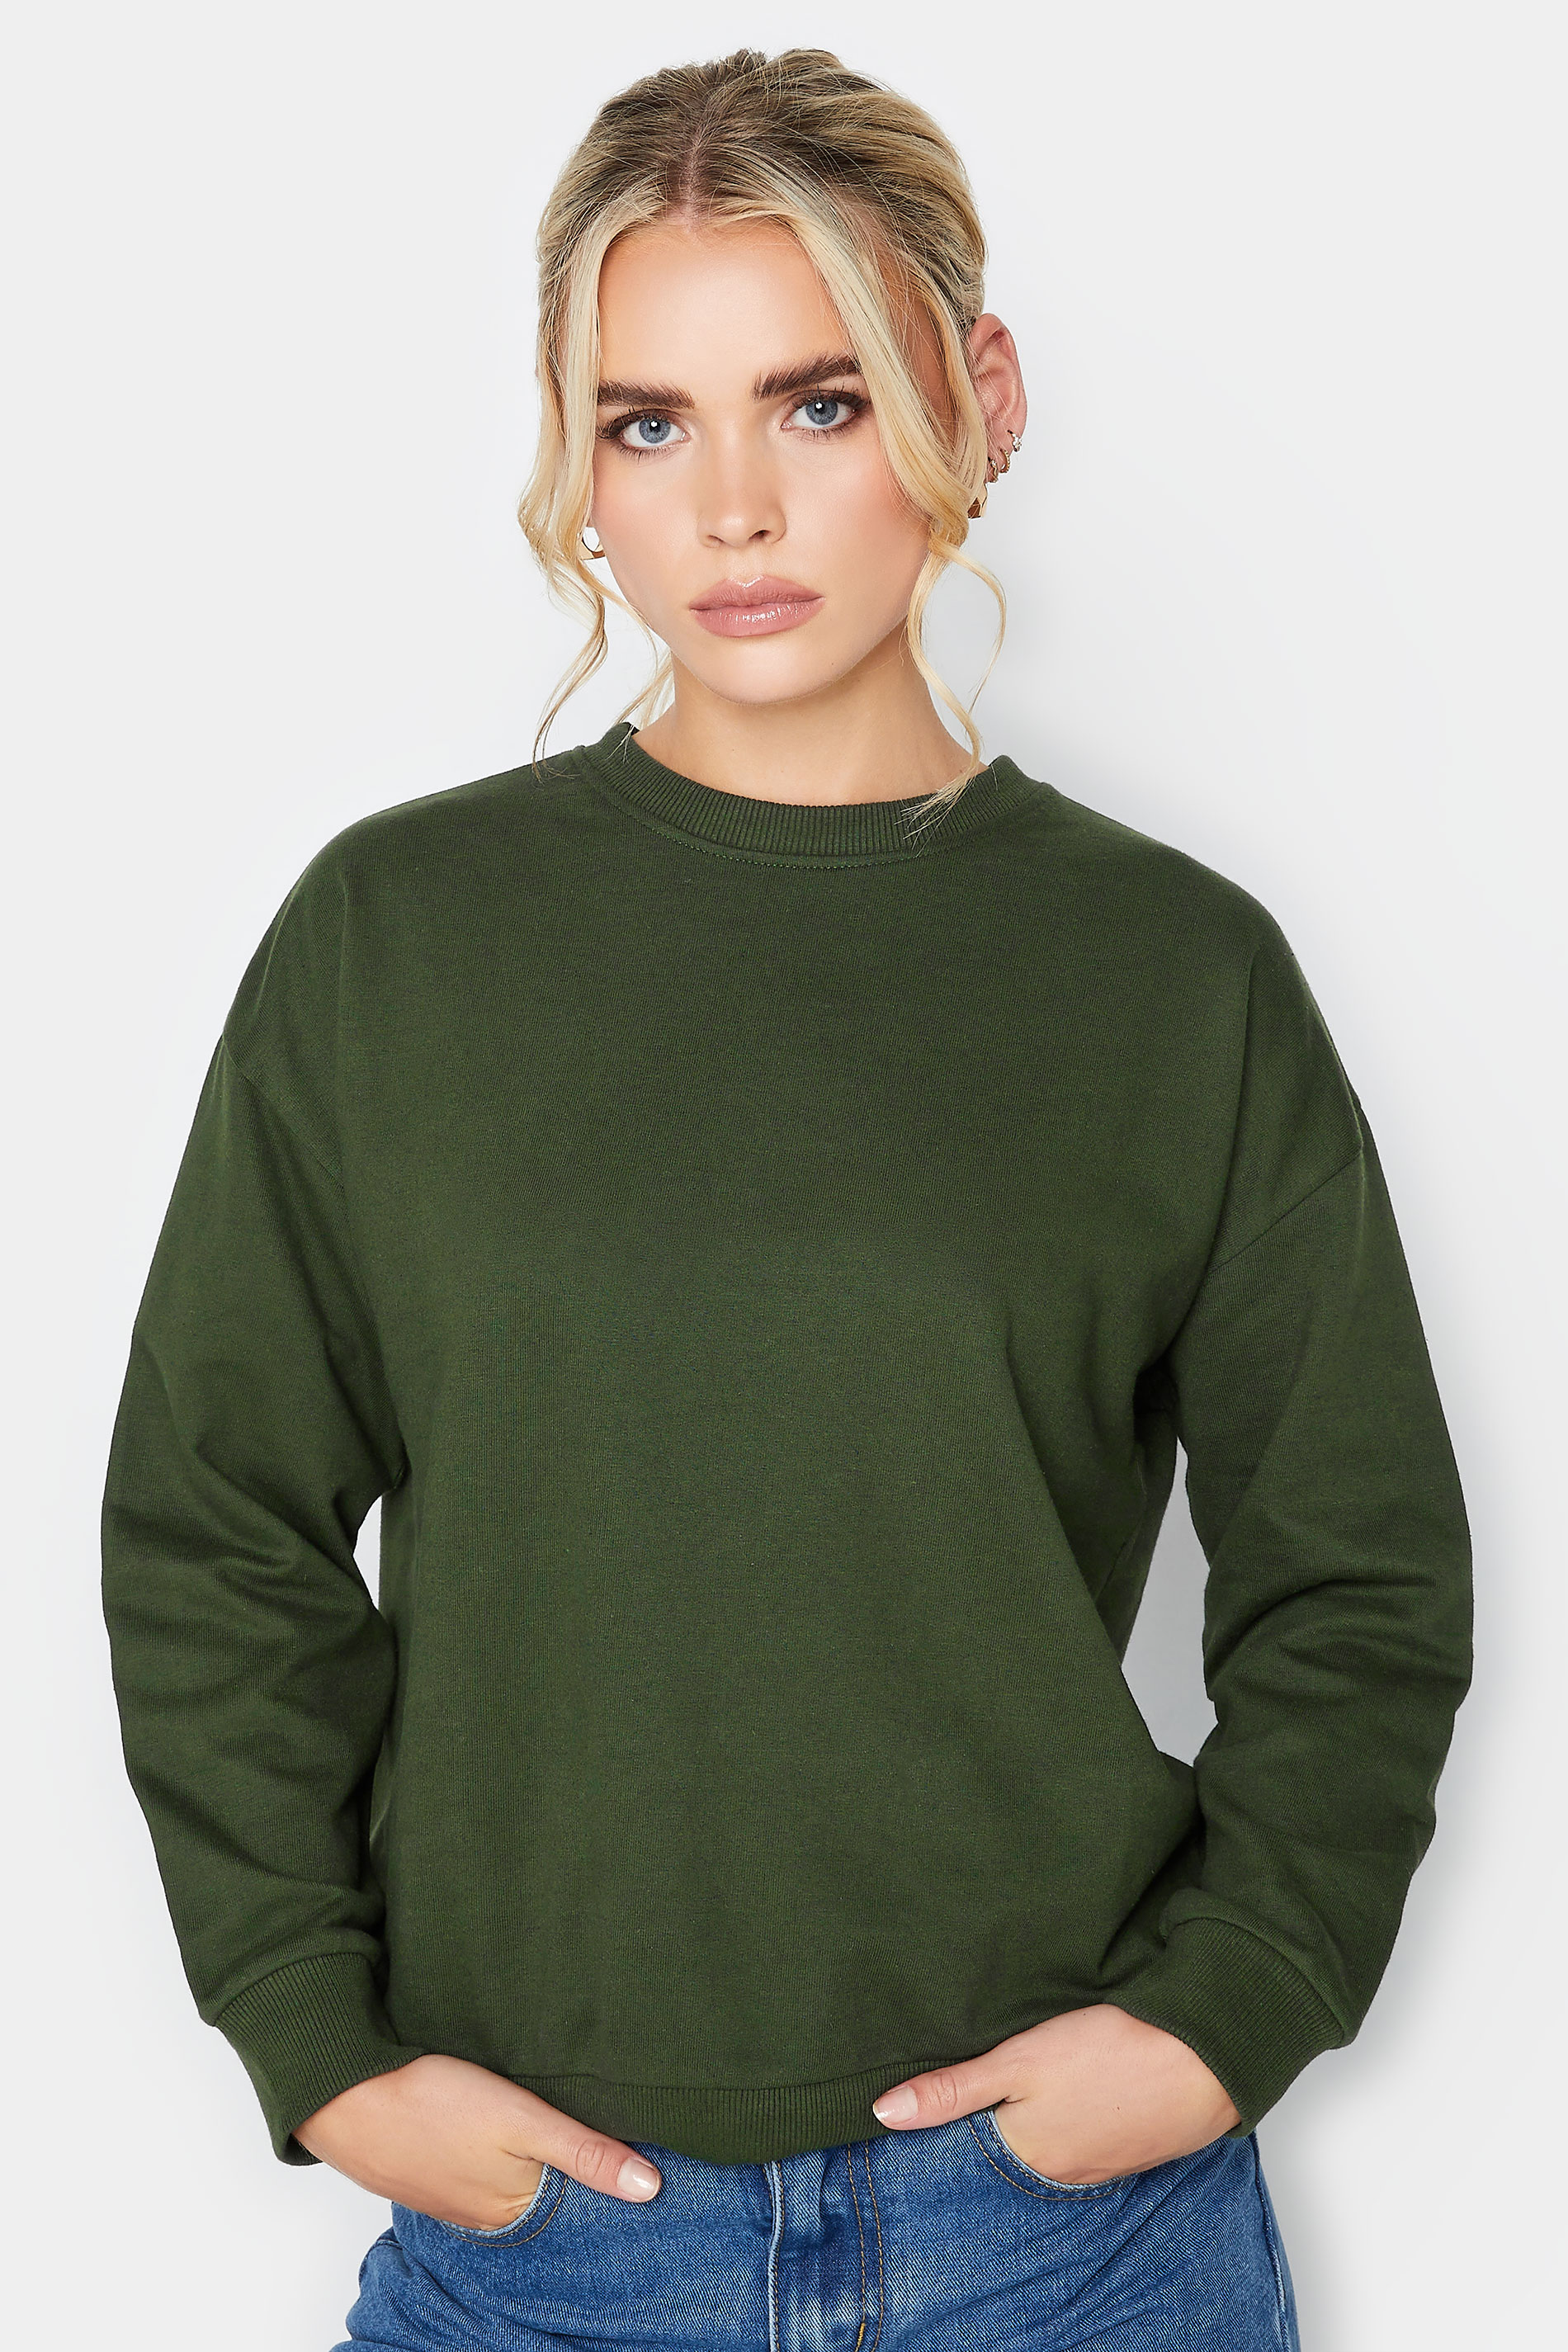 Petite Khaki Green Crew Neck Sweatshirt | PixieGirl 1